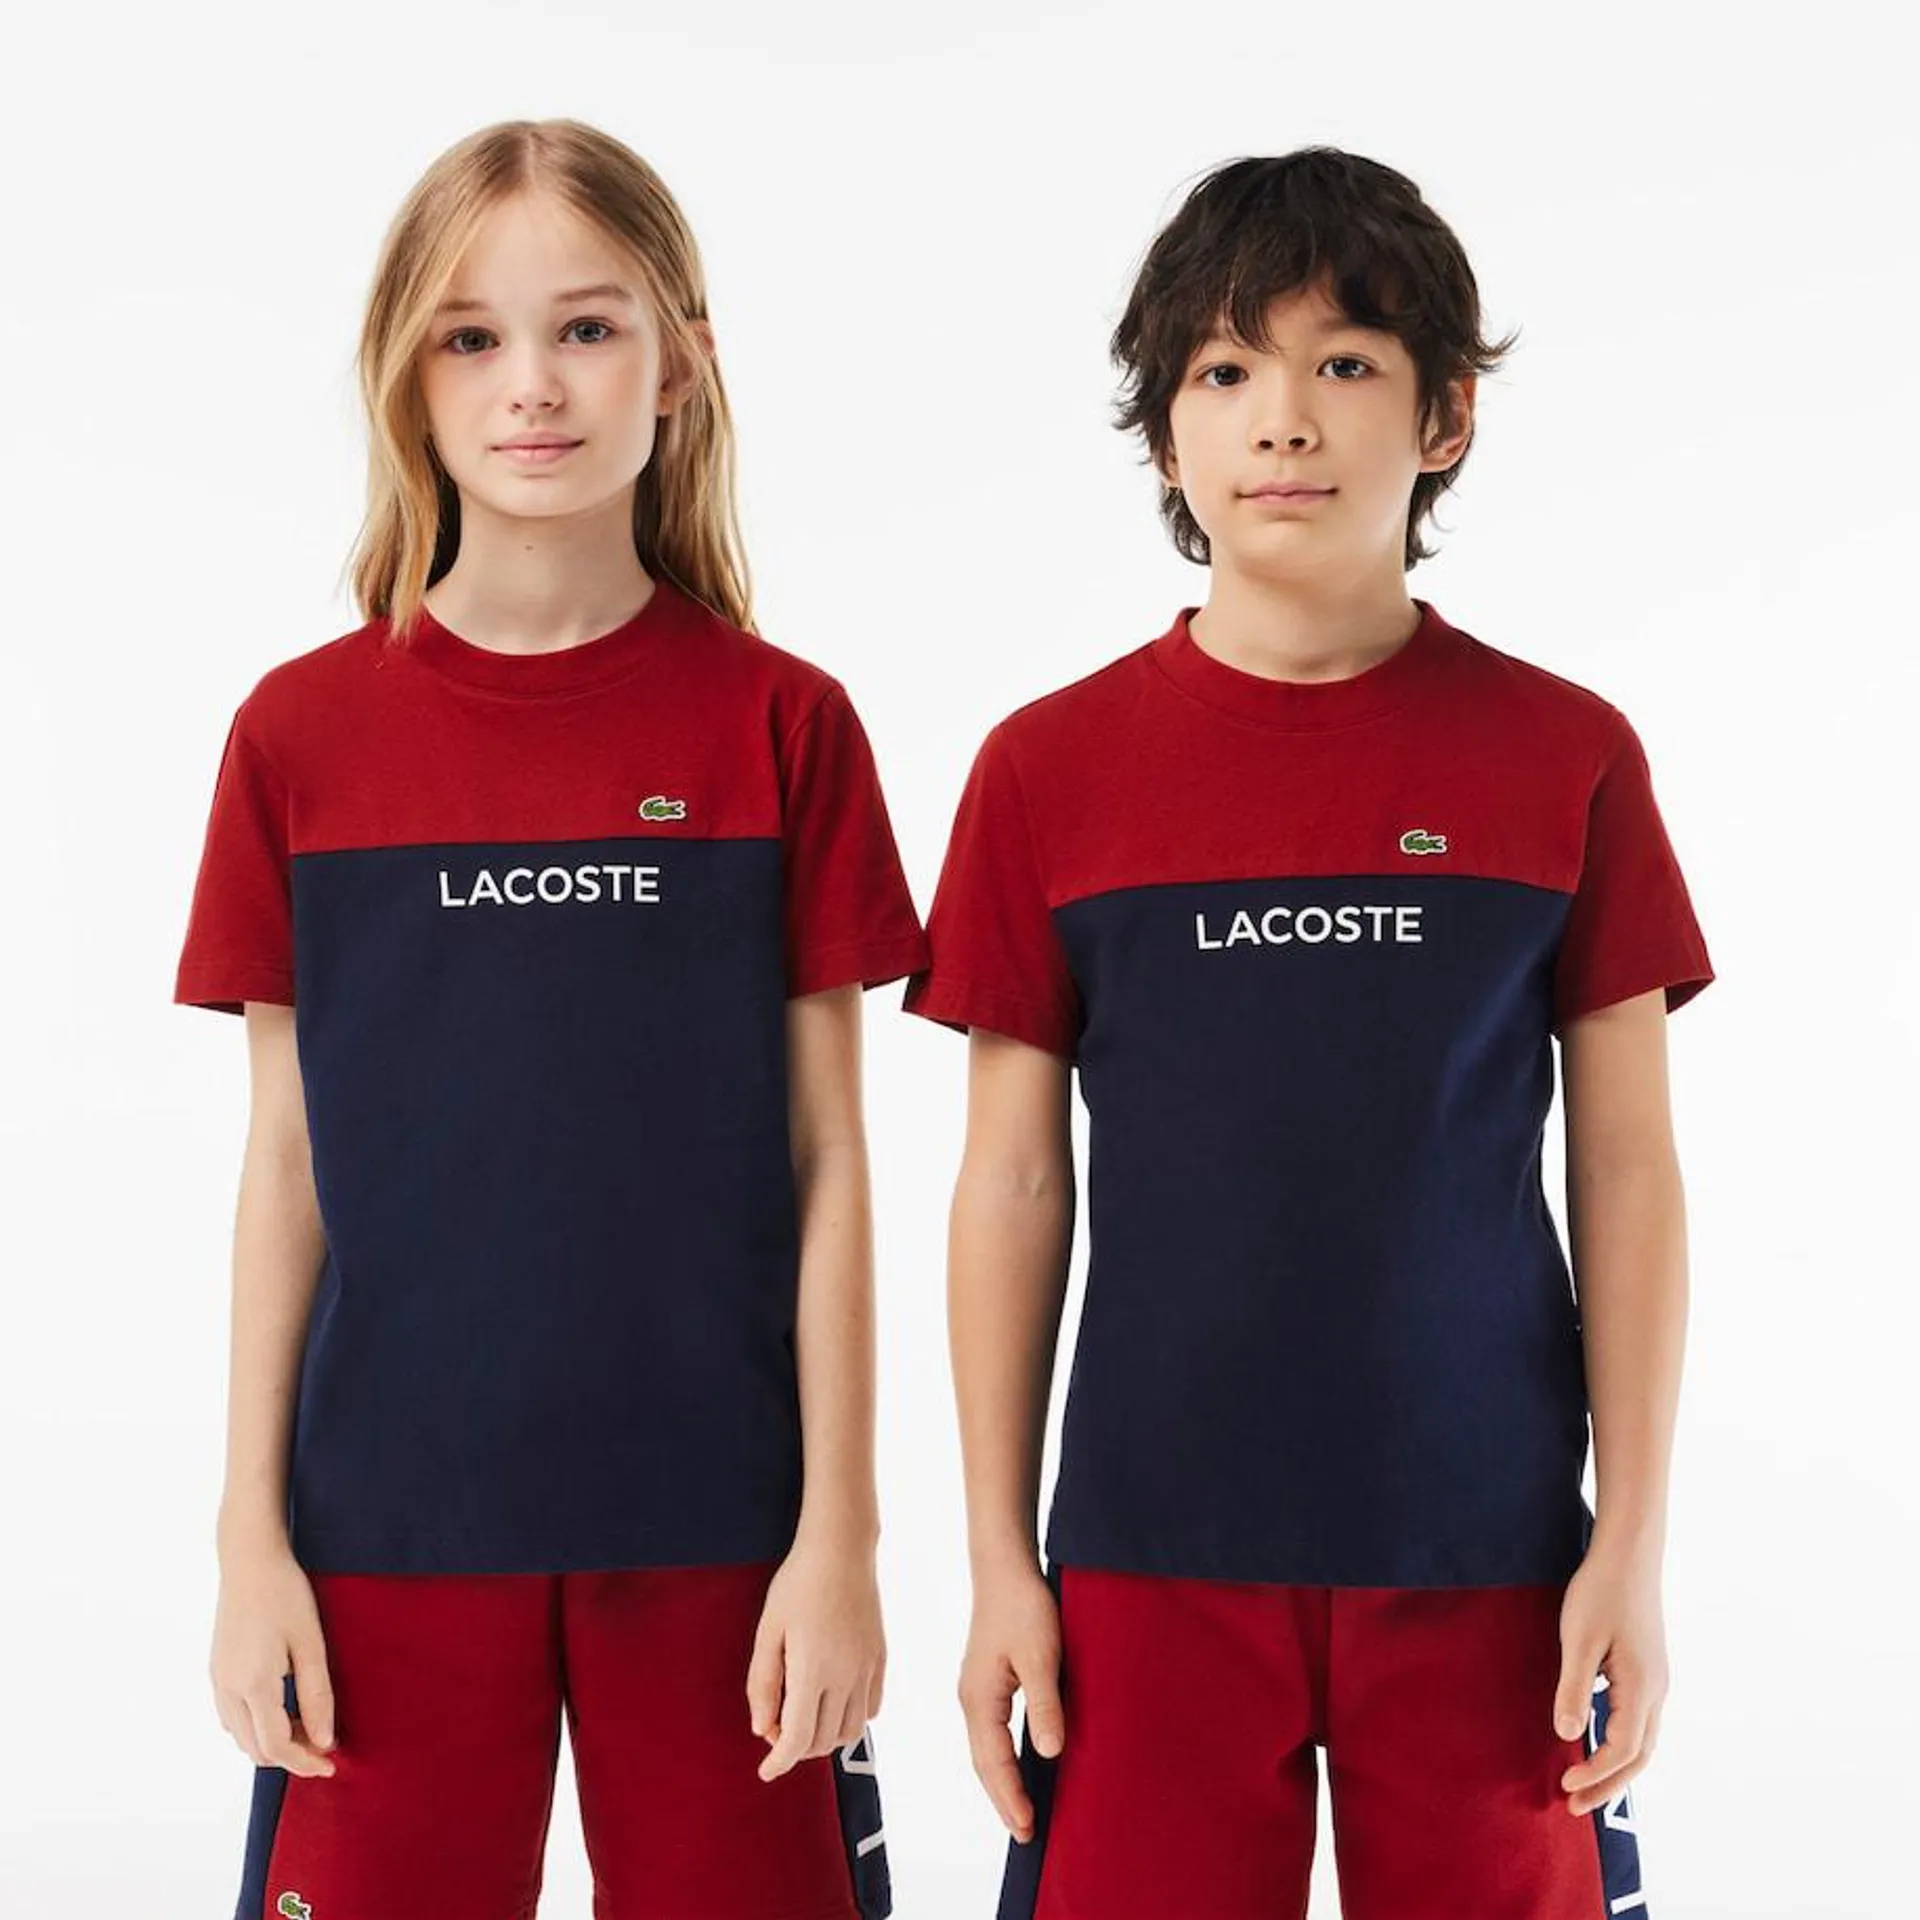 Camiseta infantil Lacoste en punto de algodón ecológico color block